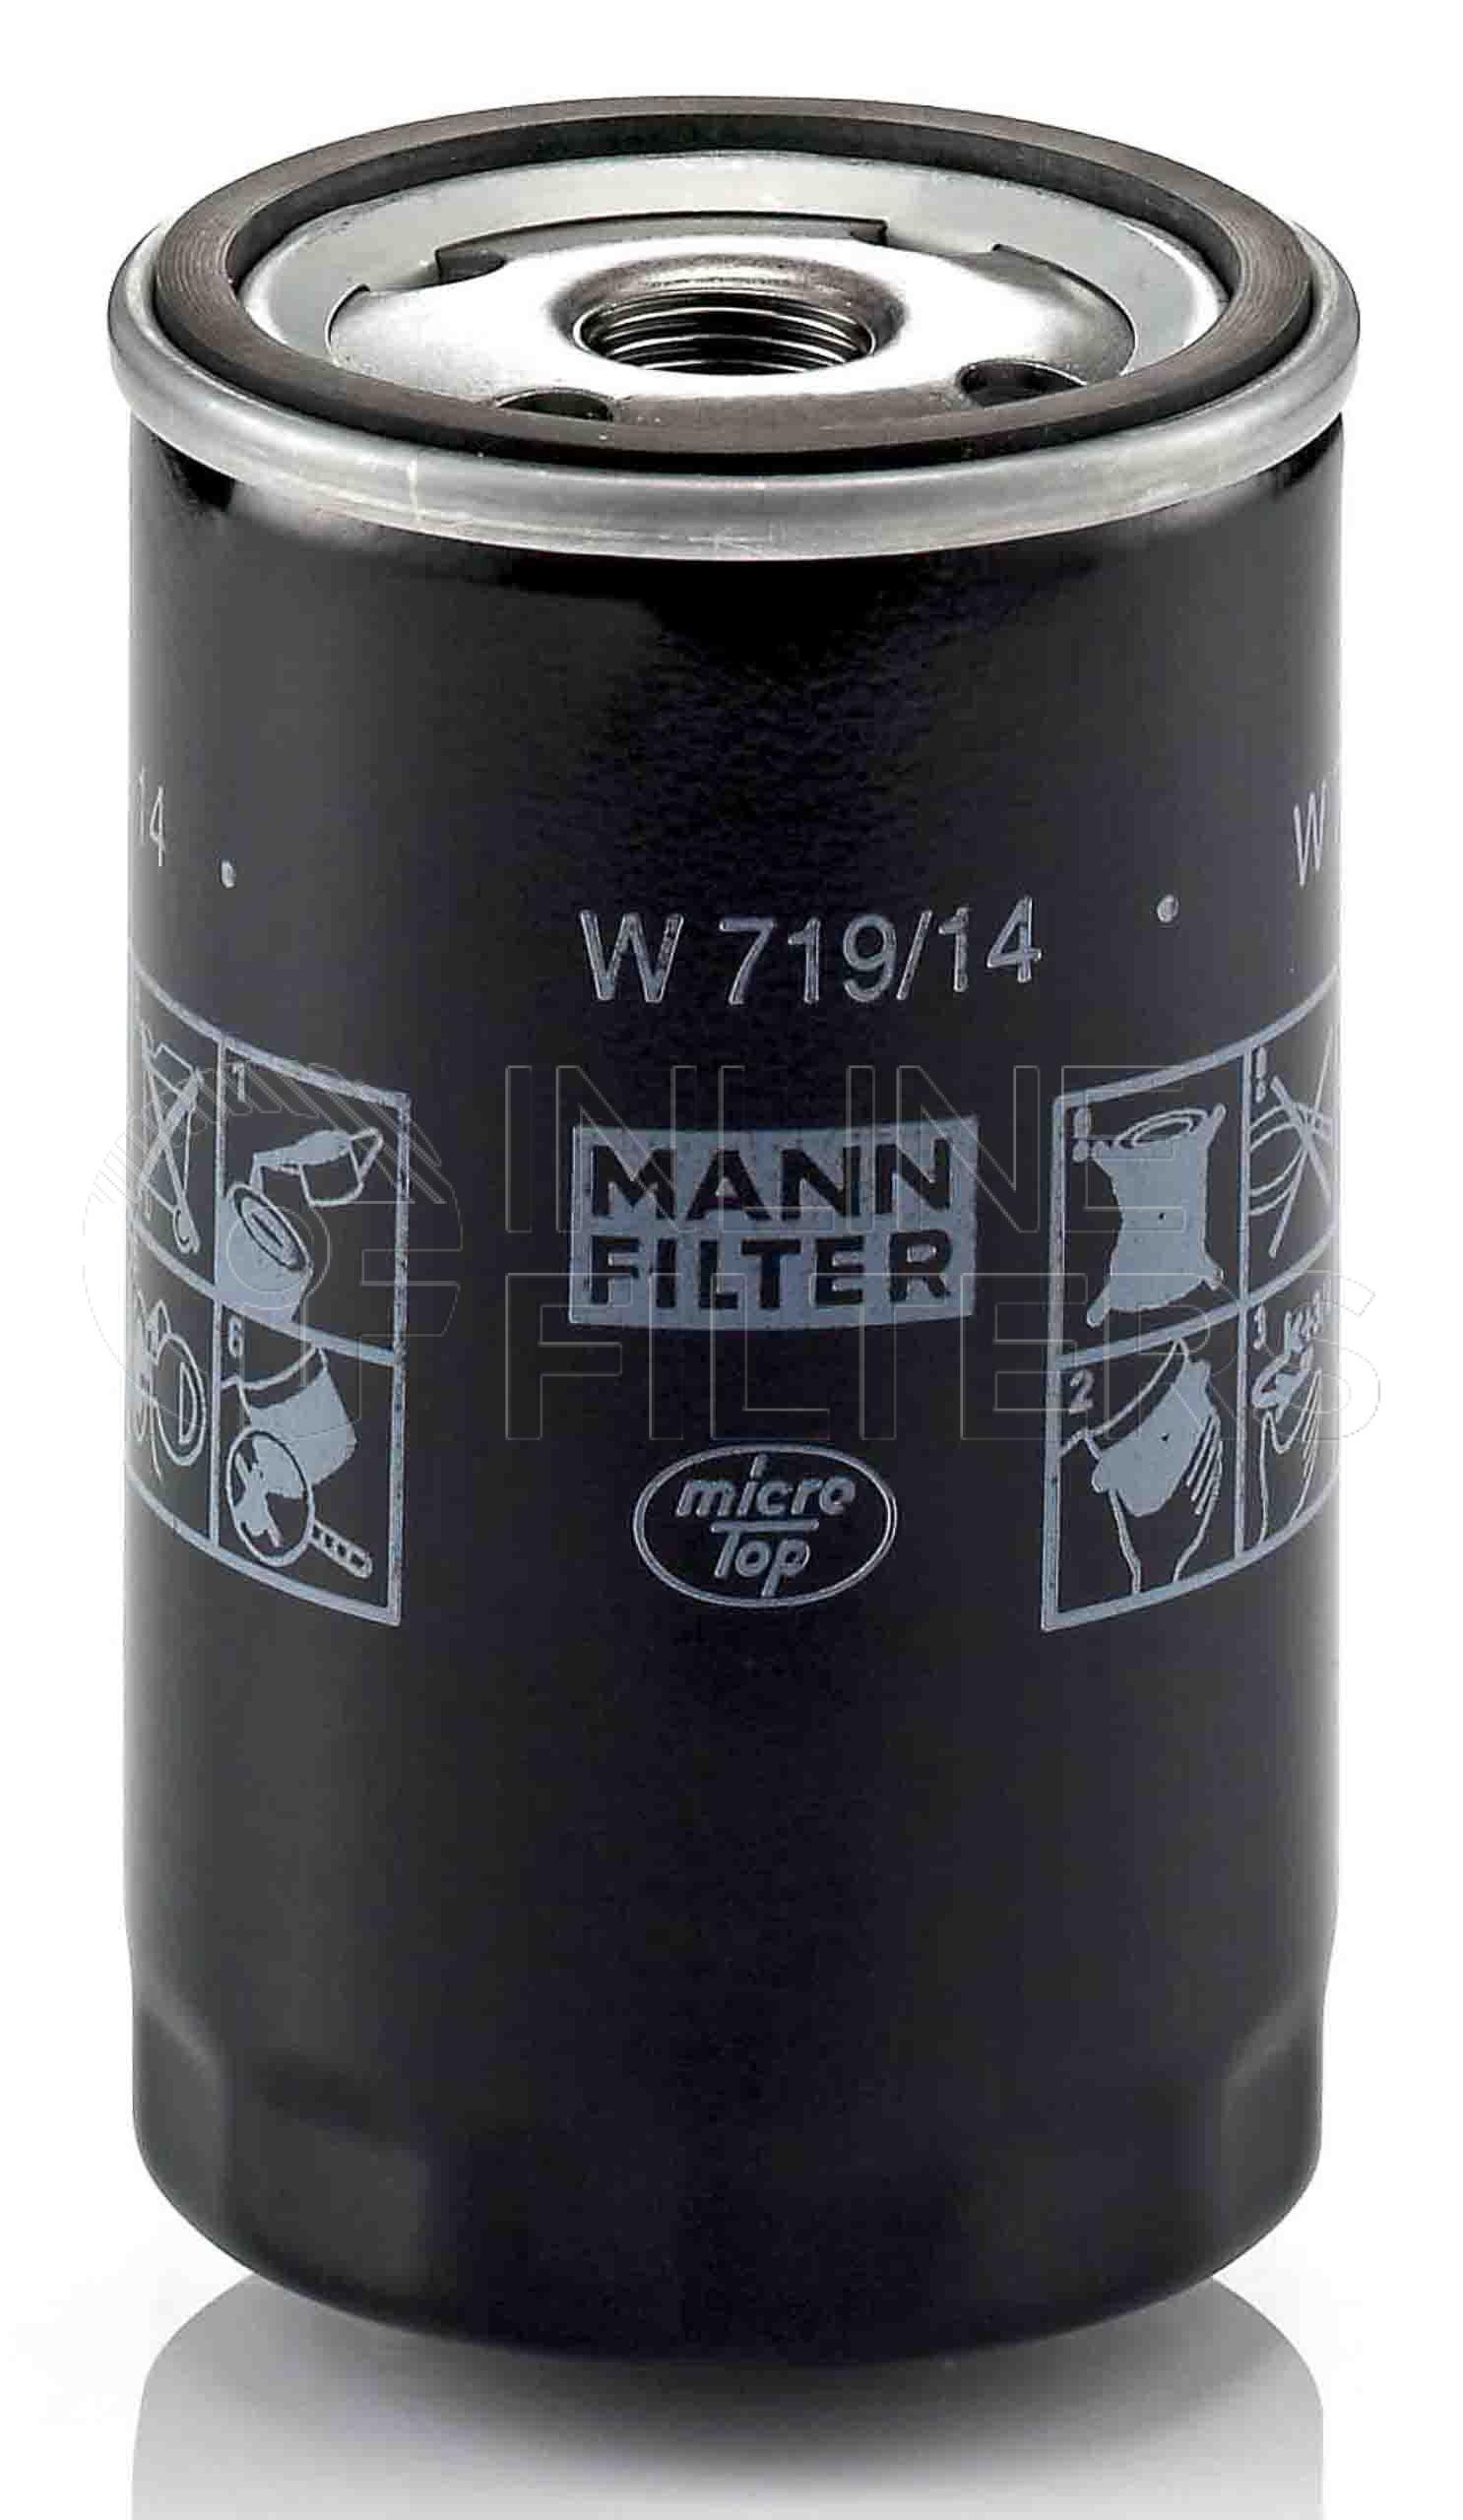 MANN Ölfilter W719/14 für Chrysler, Fiat, Liebherr, Deutz-Fahr, Gutbrod,  Linde VM